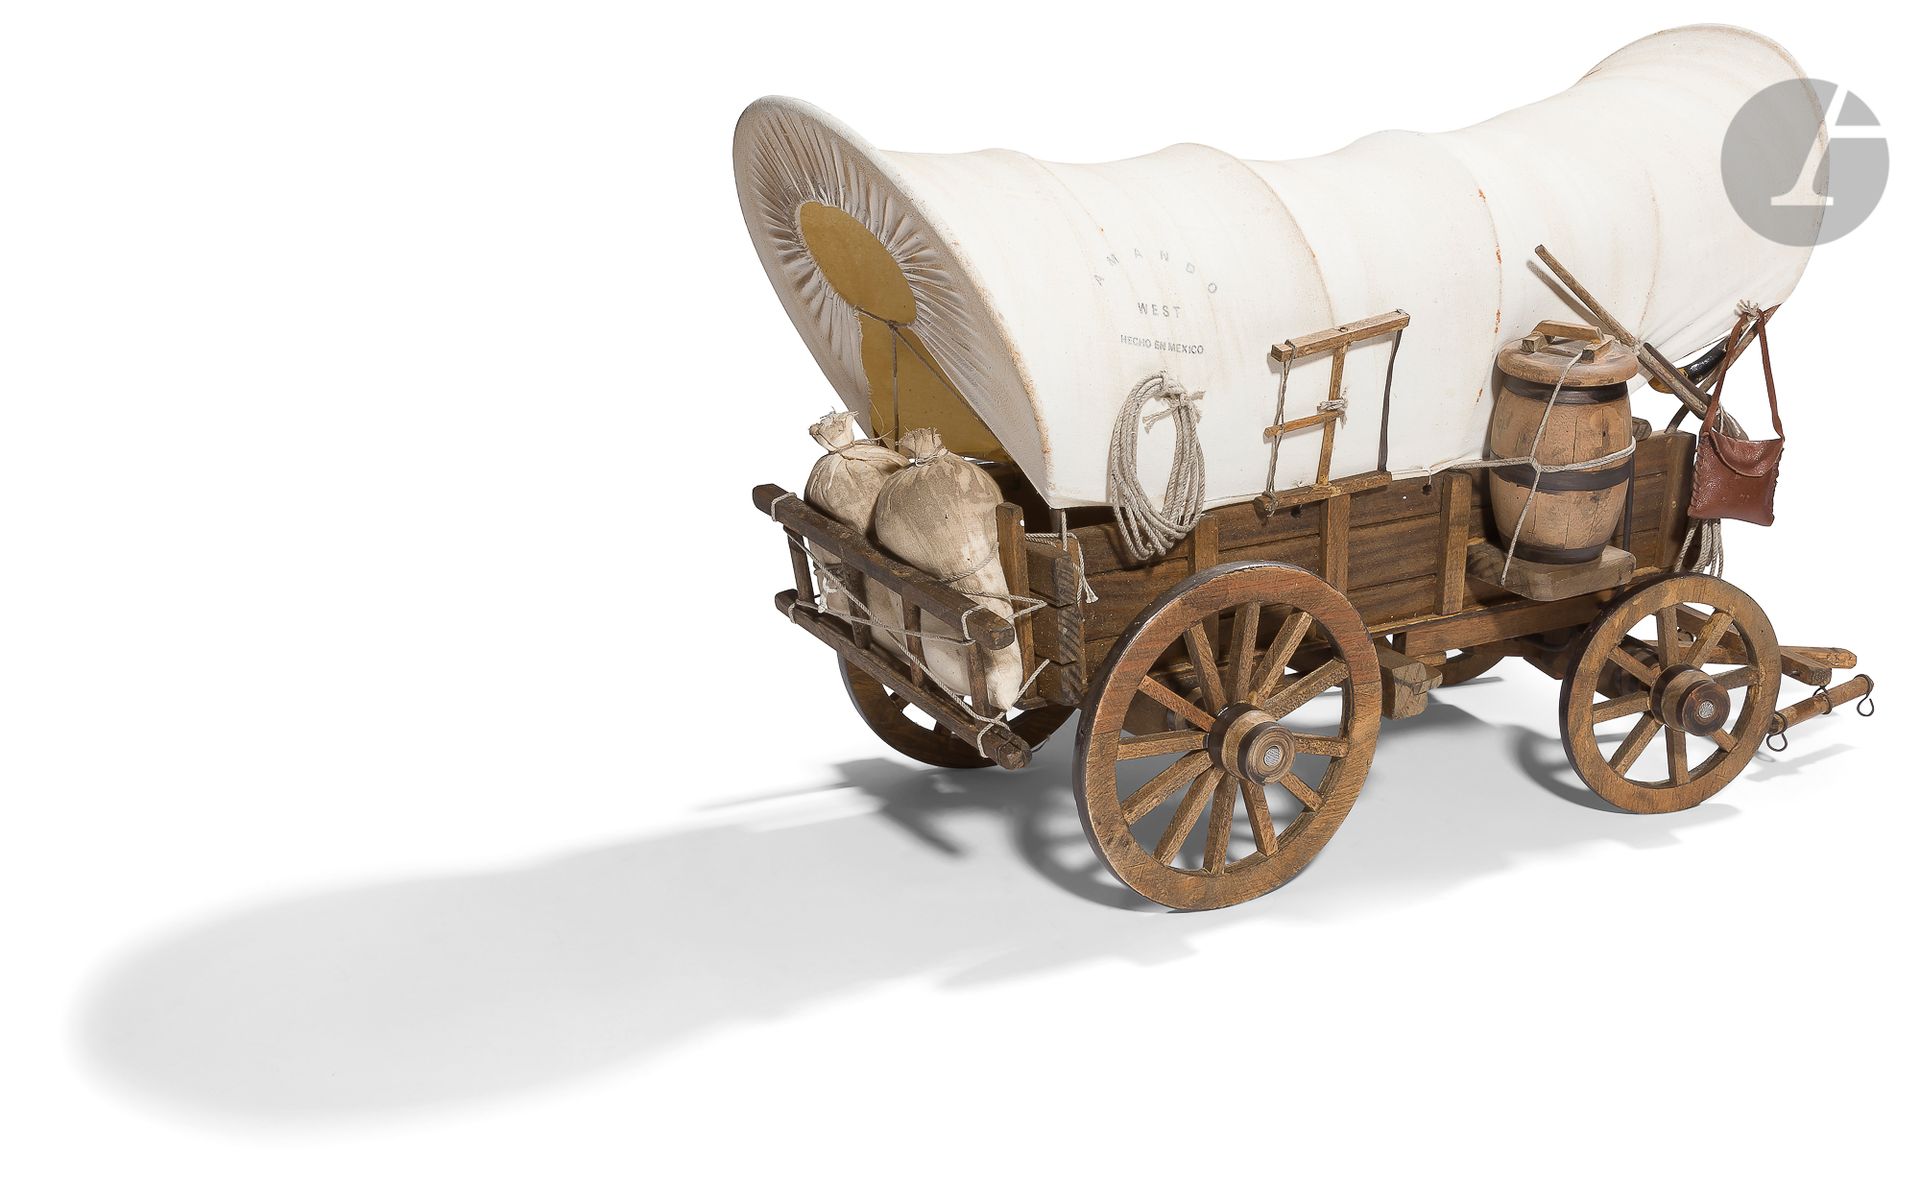 Null 西方的马车。
木制模型，有四个轮子，用帆布覆盖。
饰有一个桶和设备，套索，锯子，铁锹。
高：38厘米-长：50厘米公元
二十世纪



。